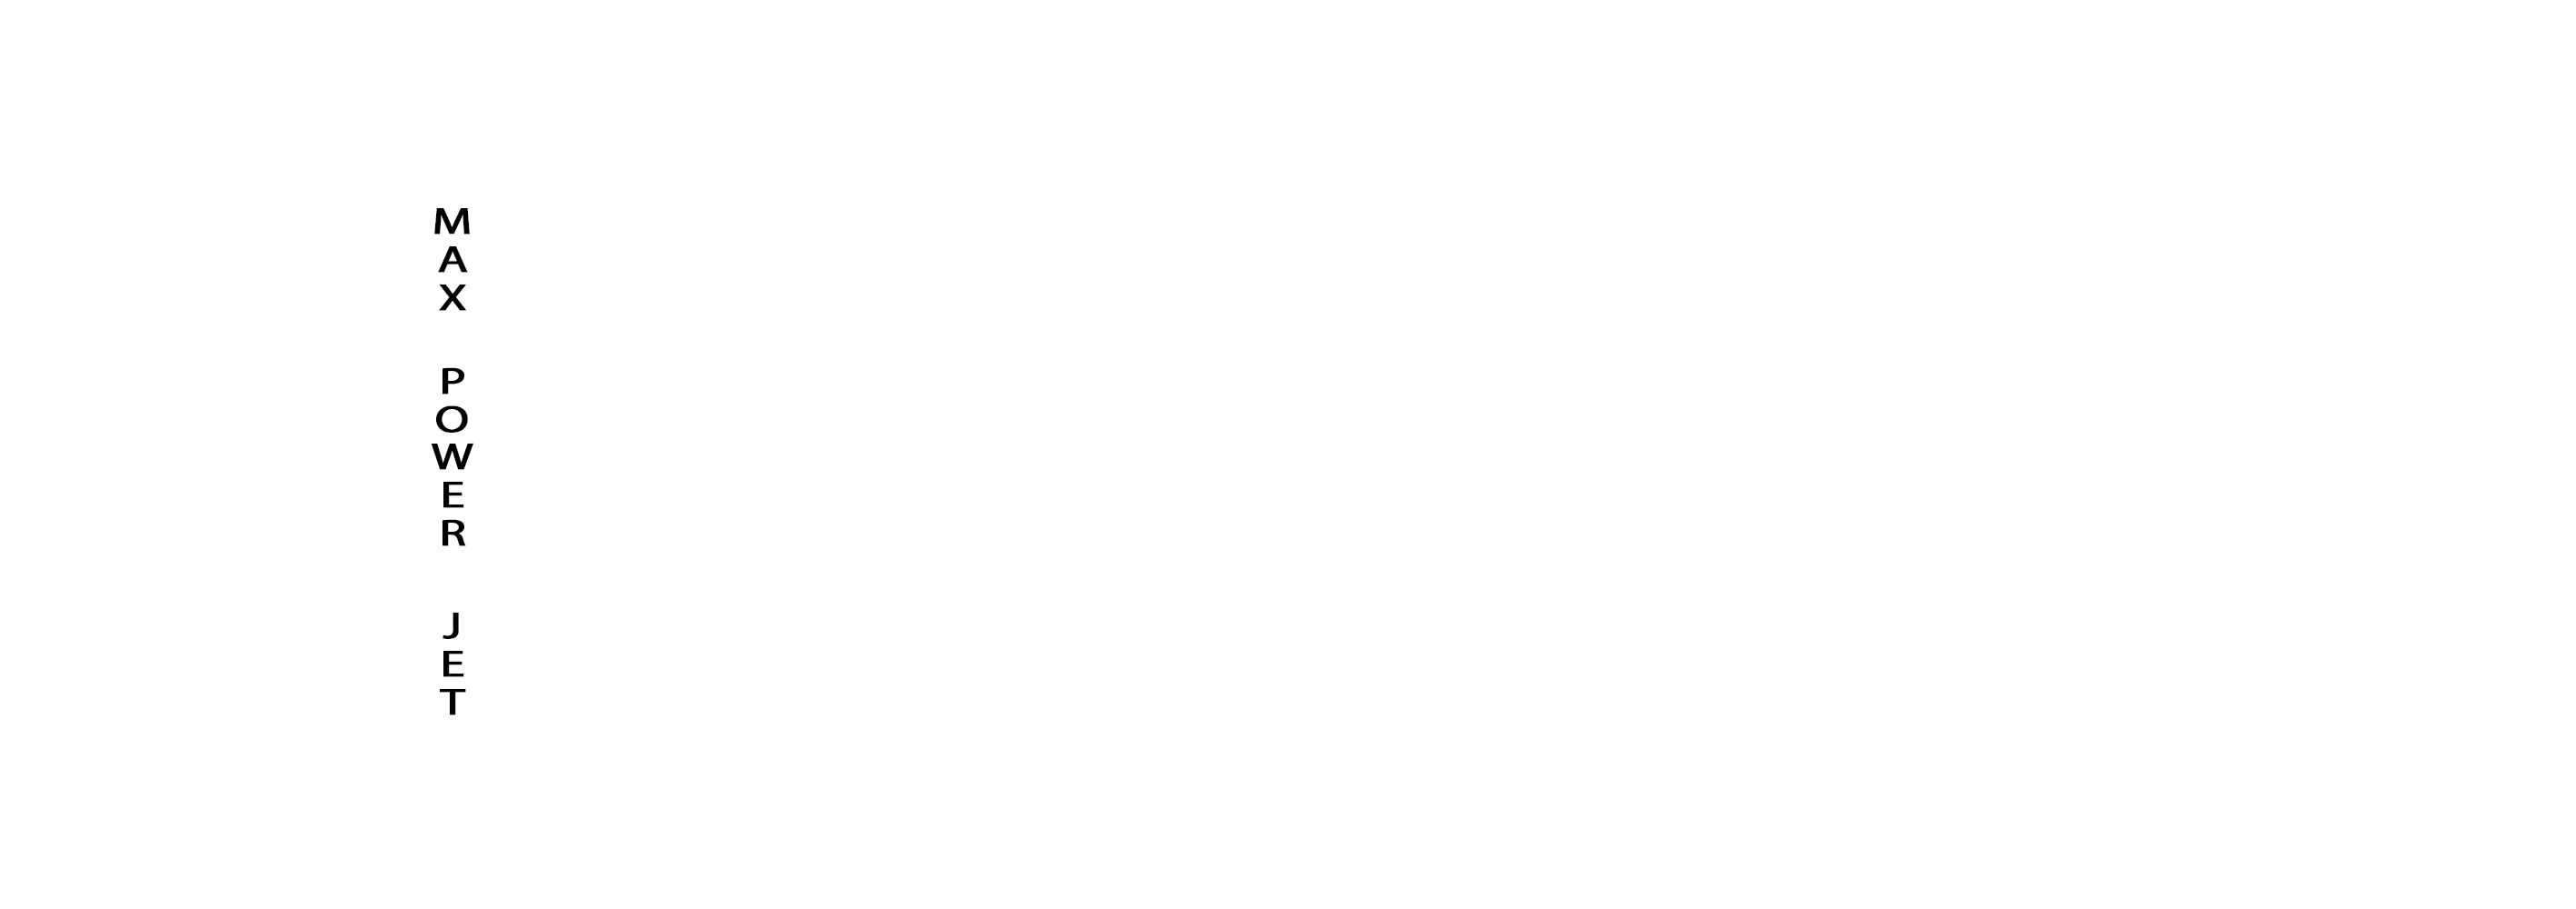 Max Power Jet